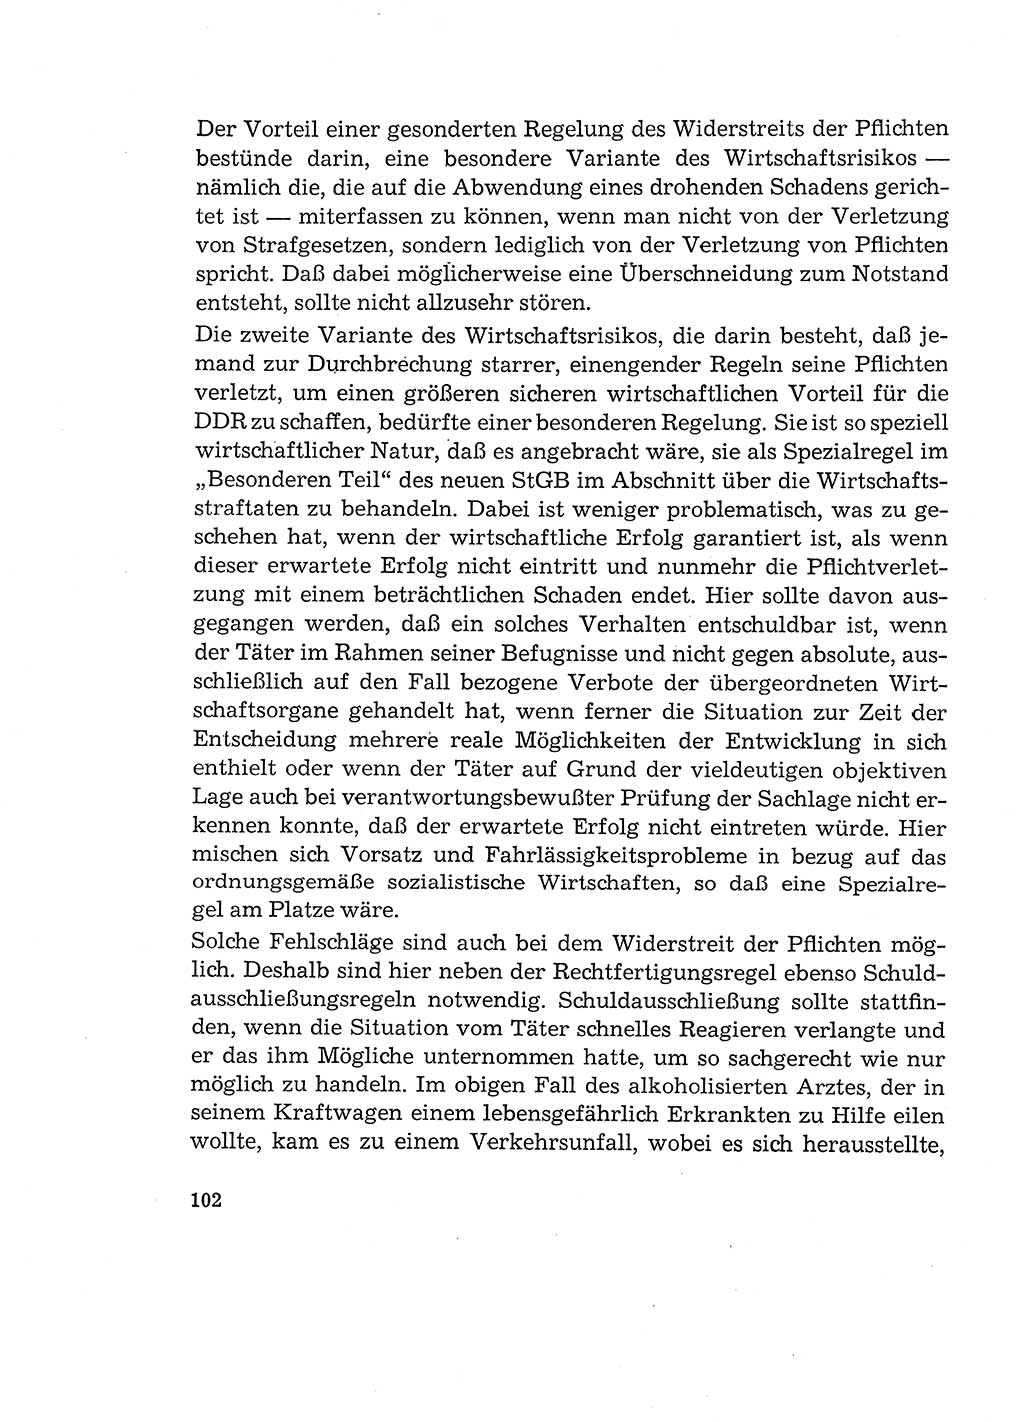 Verantwortung und Schuld im neuen Strafgesetzbuch (StGB) [Deutsche Demokratische Republik (DDR)] 1964, Seite 102 (Verantw. Sch. StGB DDR 1964, S. 102)